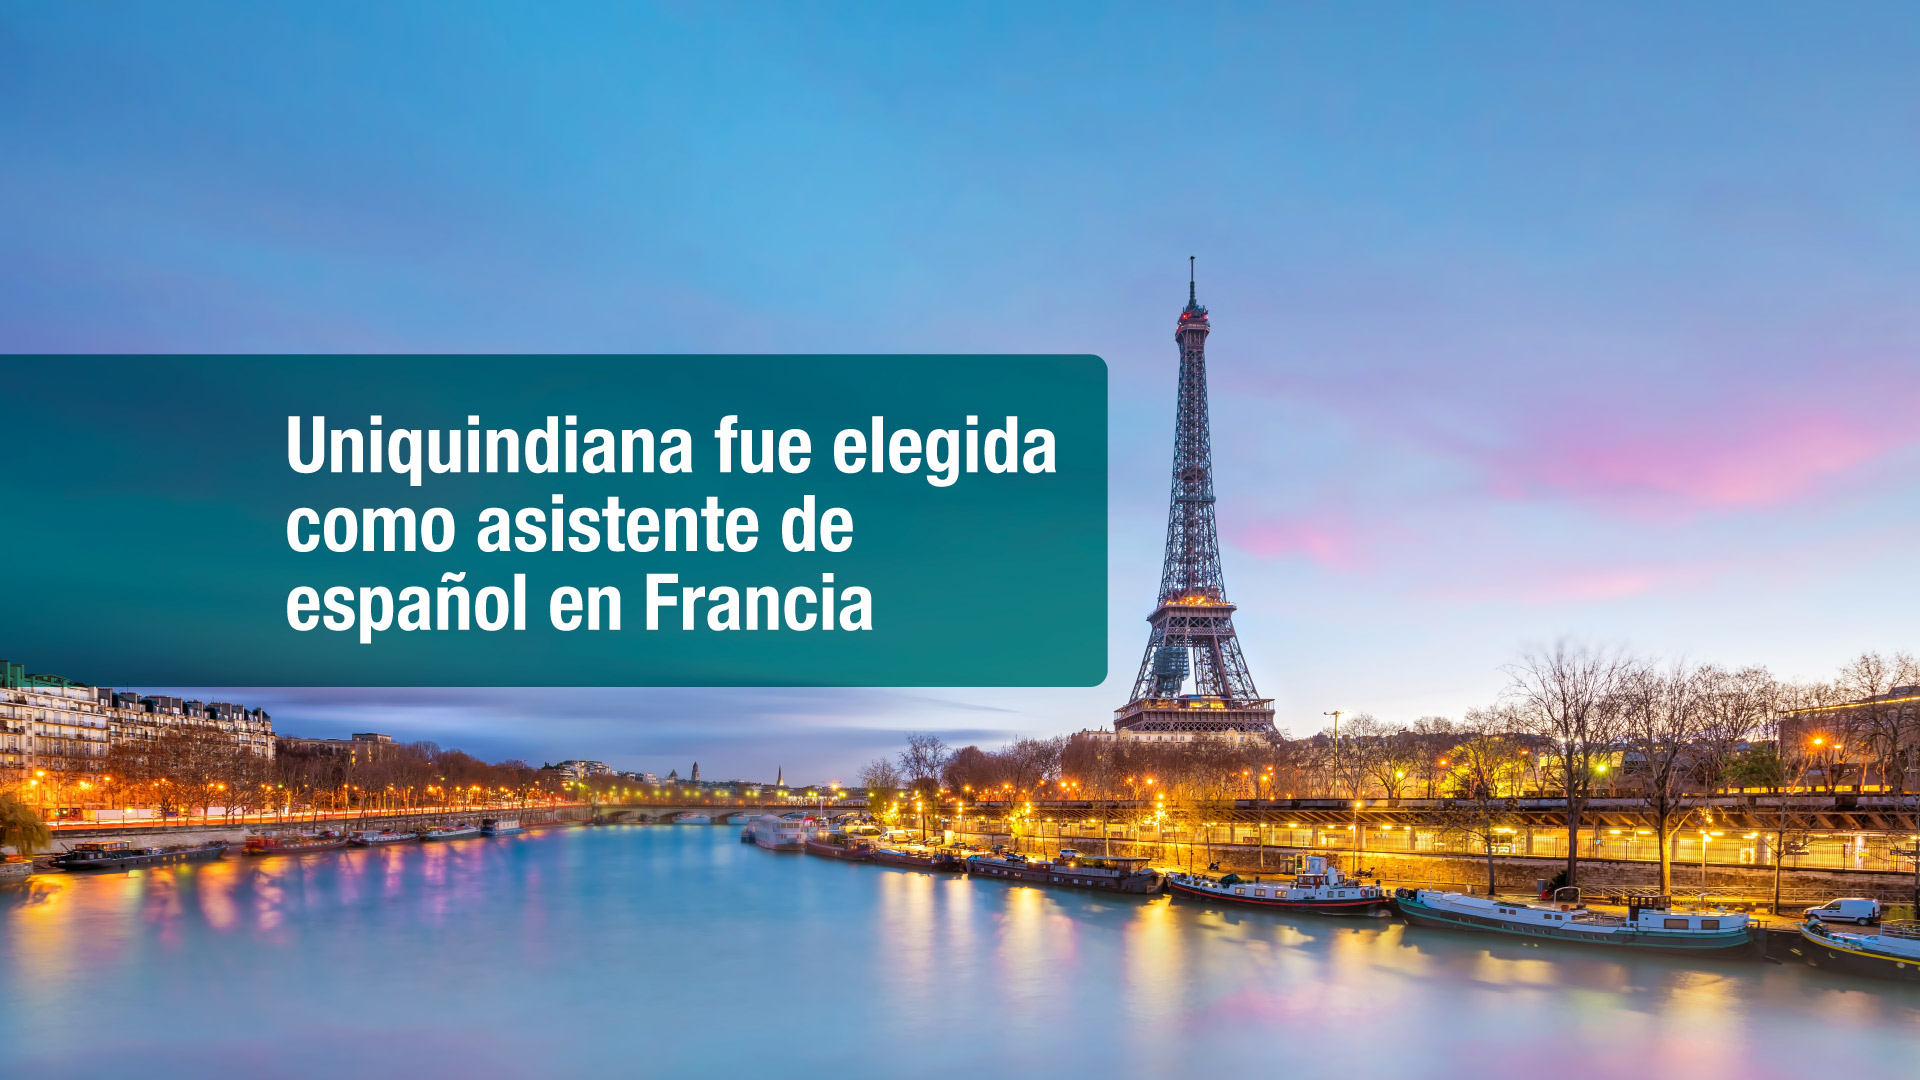 Uniquindiana fue elegida para participar como asistente de español en Francia